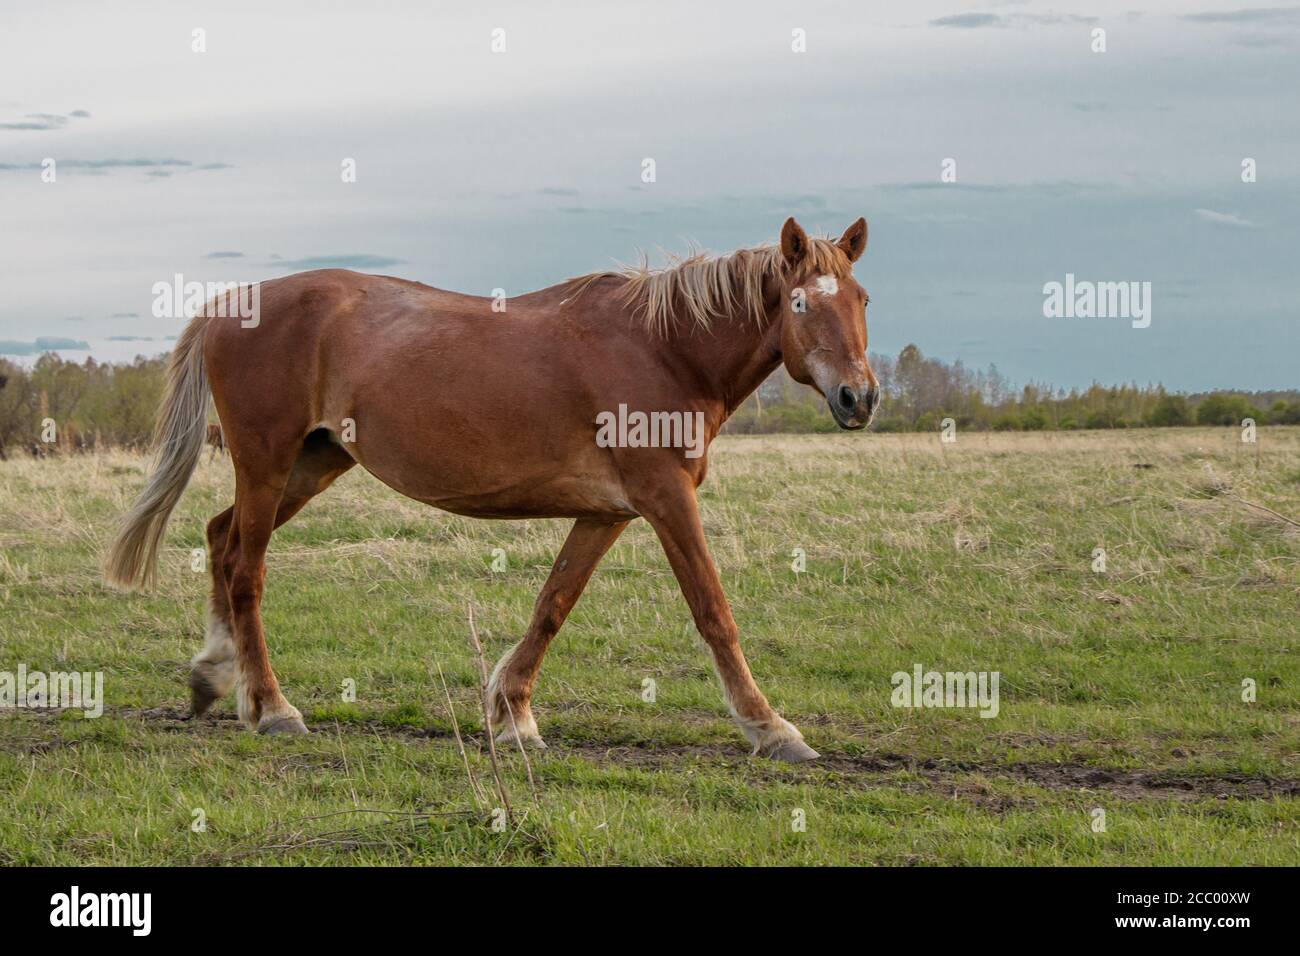 Un beau cheval brun traverse le pâturage, tourne son museau et regarde la caméra. Banque D'Images